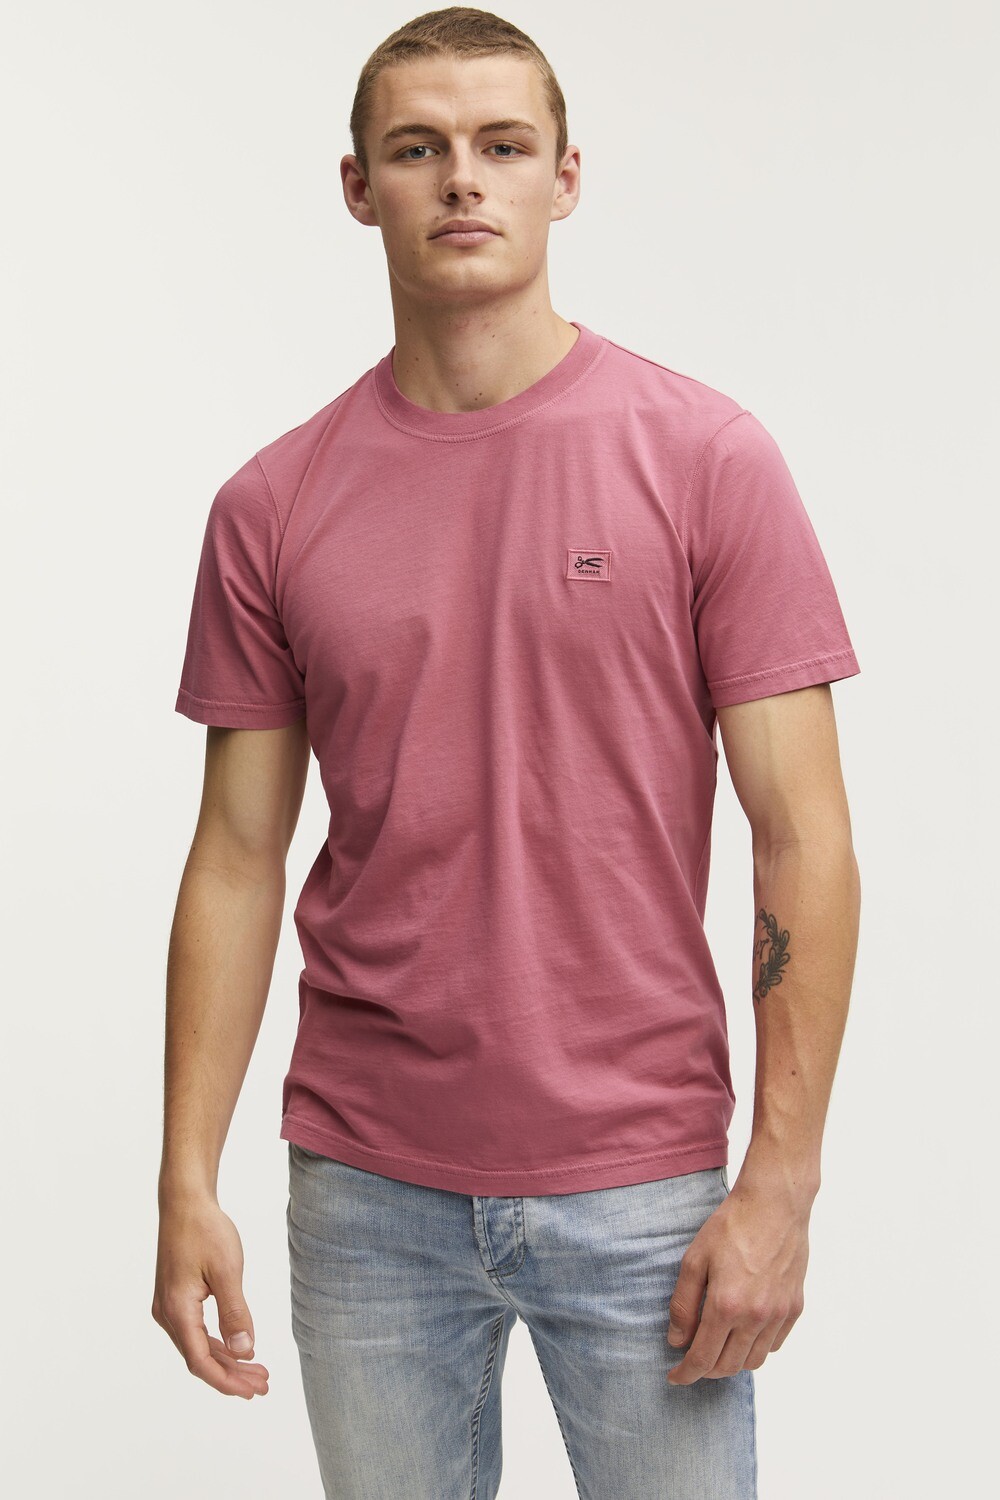 Denham Applique T-Shirt